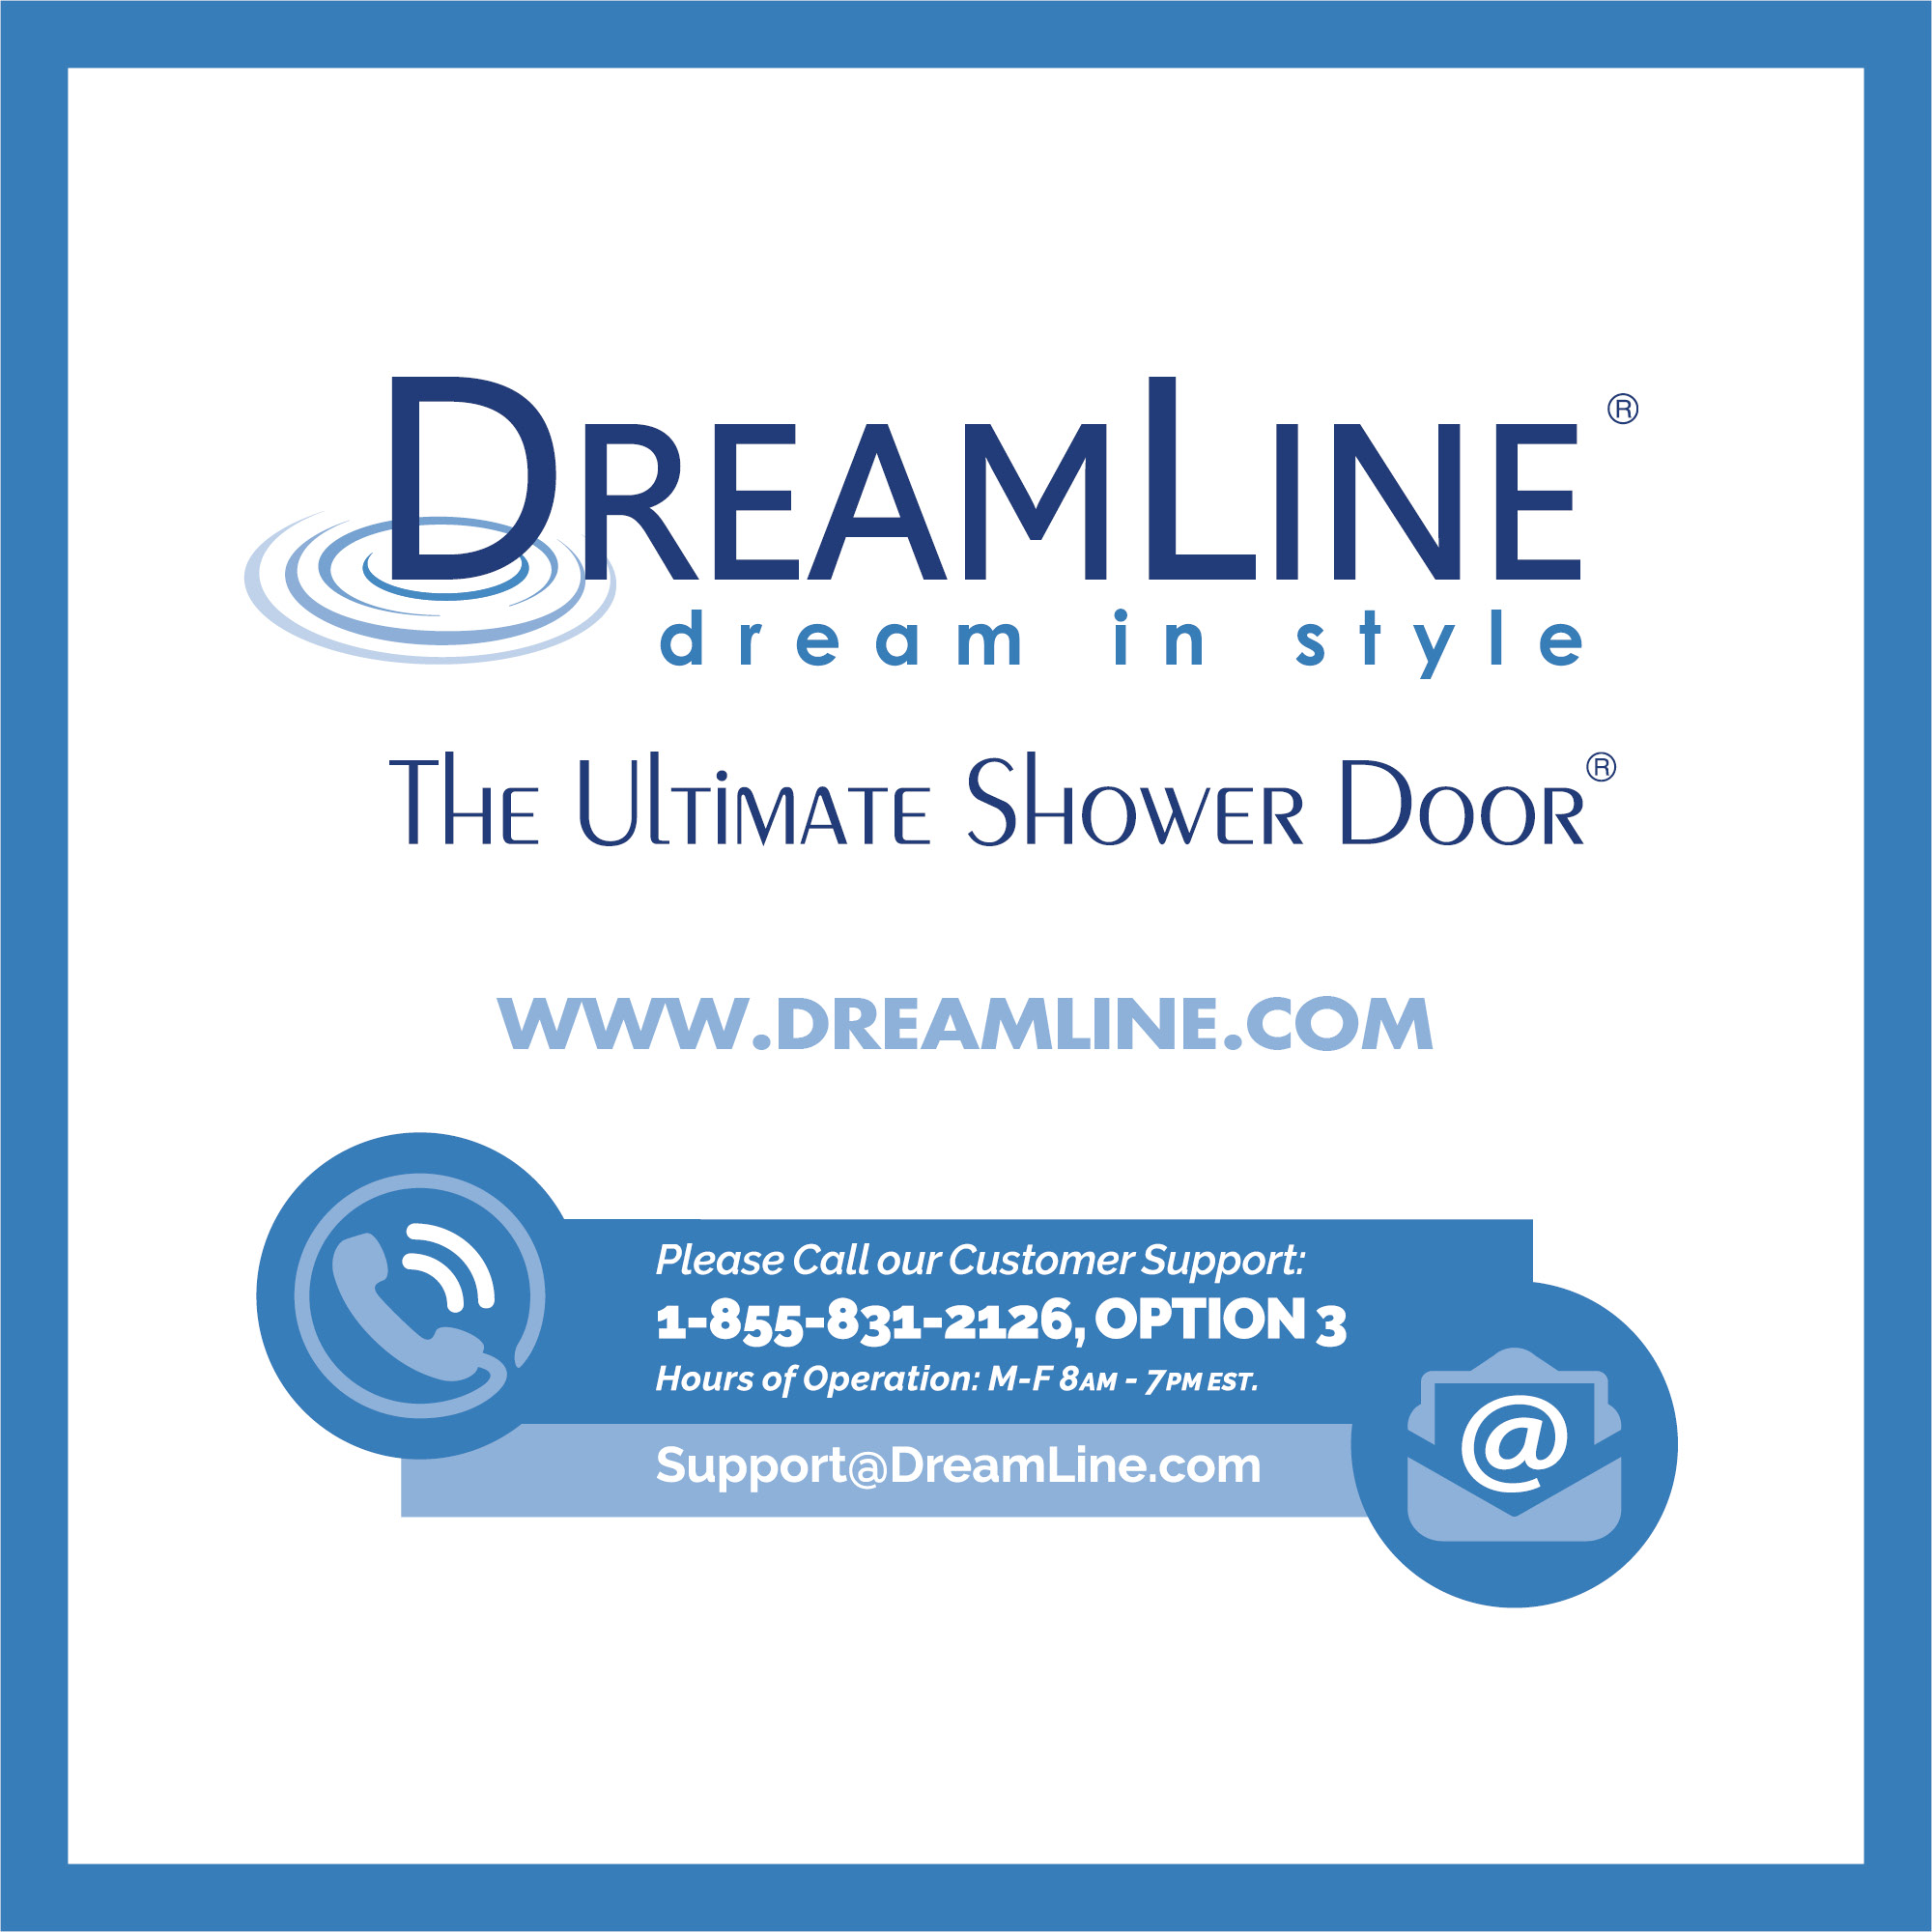 DreamLine SHDR-20317210-01 Chrome Frameless 31-32" Adjustable Shower Door